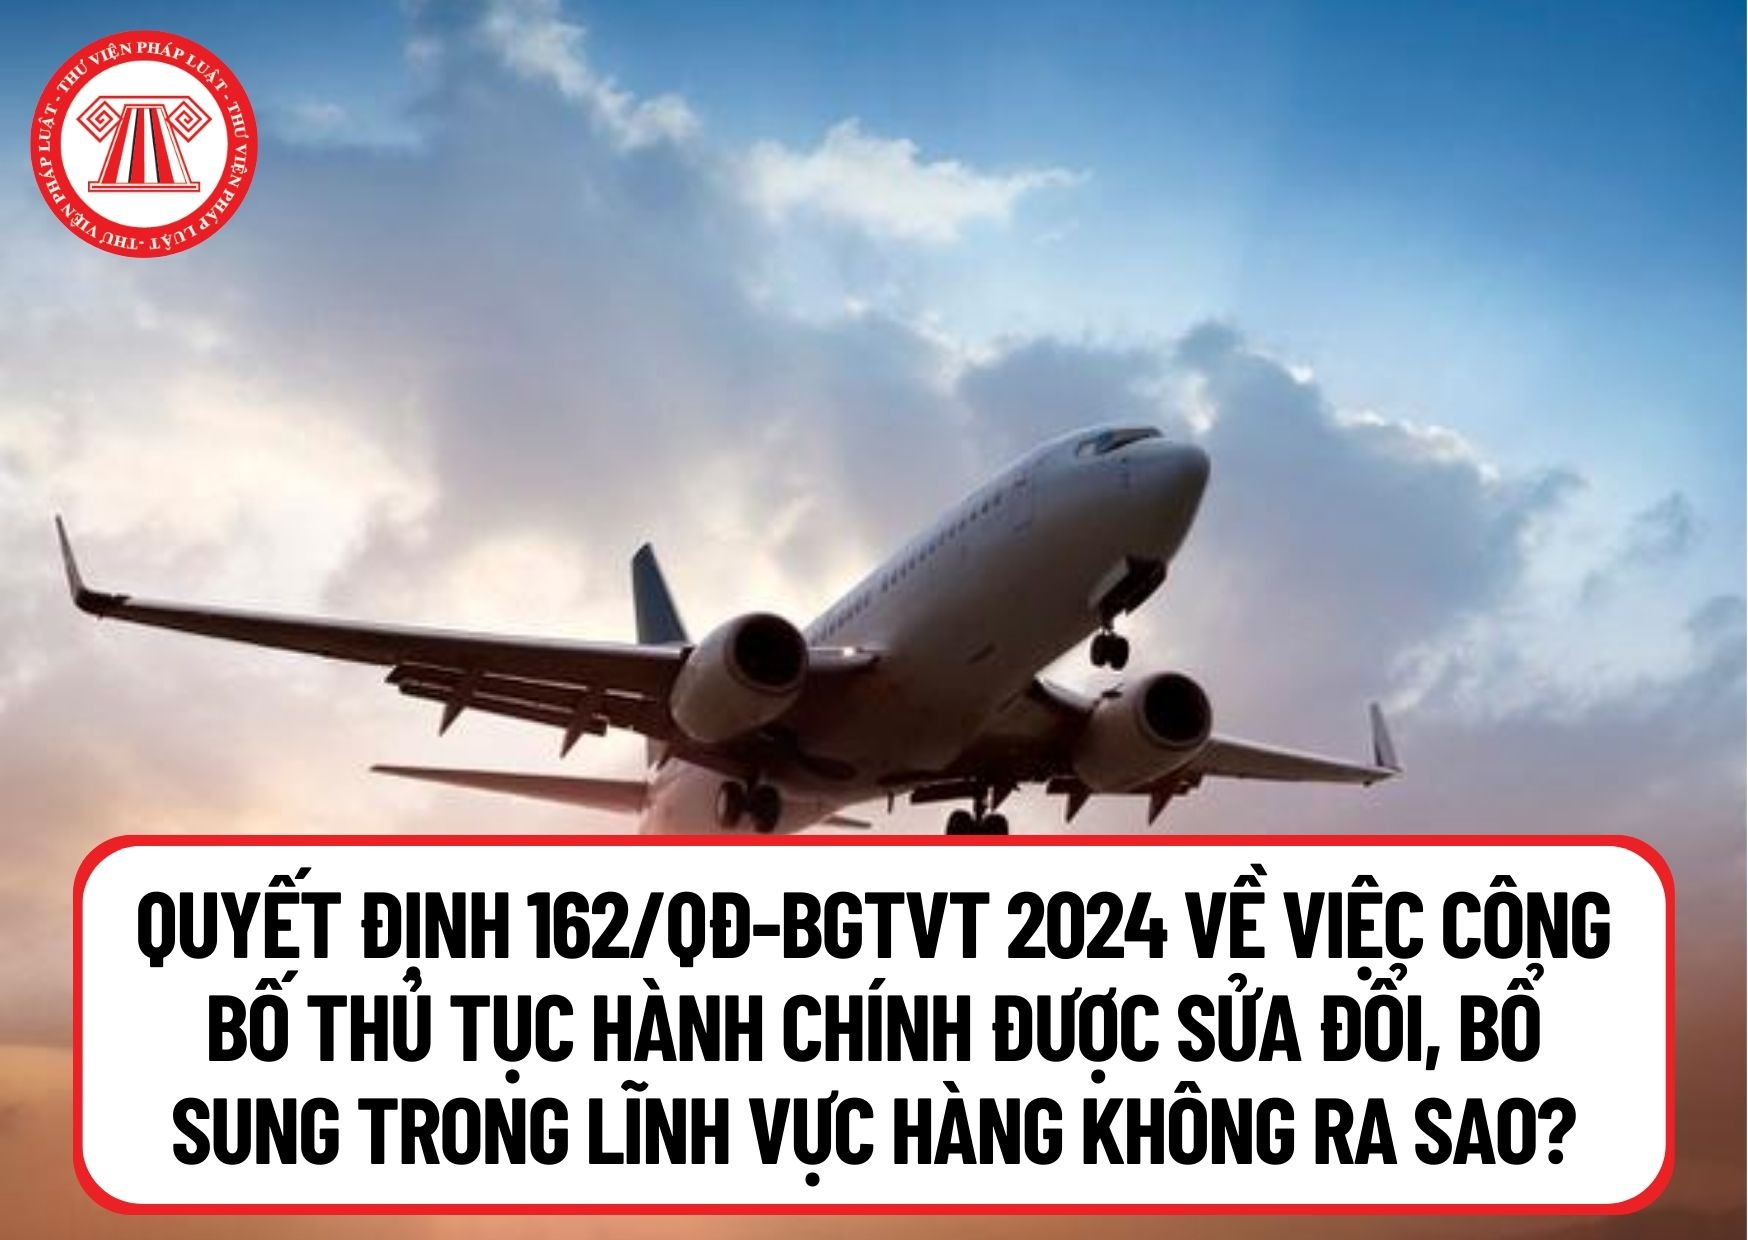 Quyết định 162/QĐ-BGTVT 2024 về việc công bố thủ tục hành chính được sửa đổi, bổ sung trong lĩnh vực hàng không ra sao?